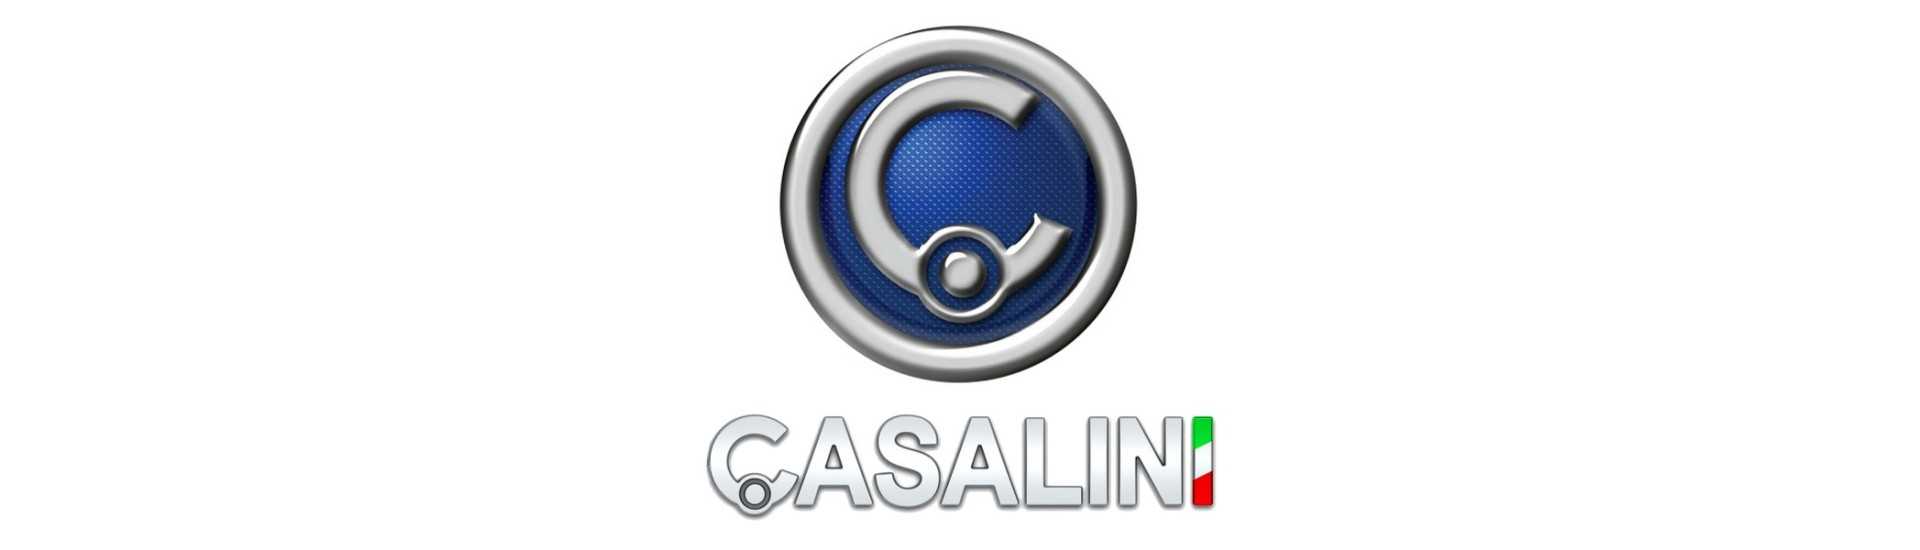 Mangueira de freio rígida melhor preço para o carro sem permissão Casalini